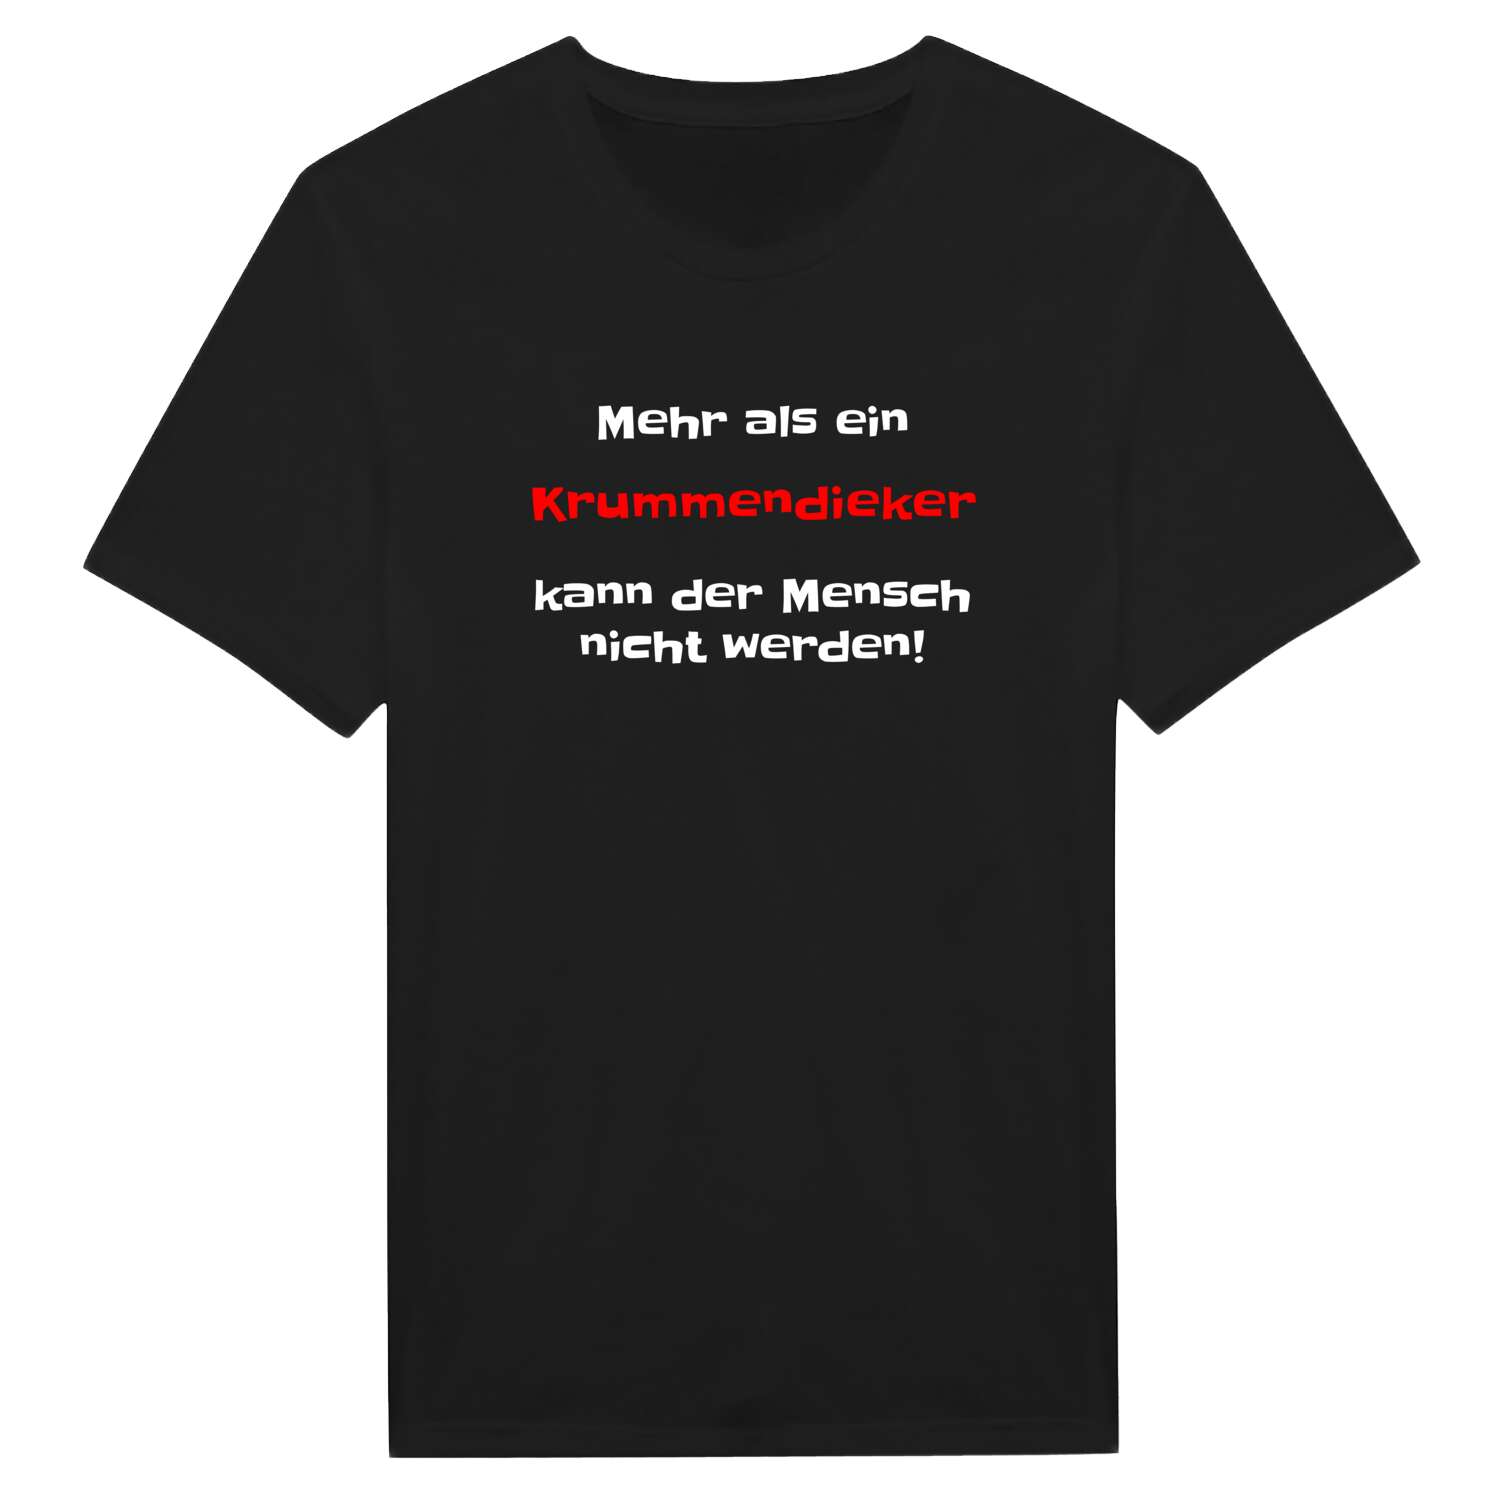 Krummendiek T-Shirt »Mehr als ein«